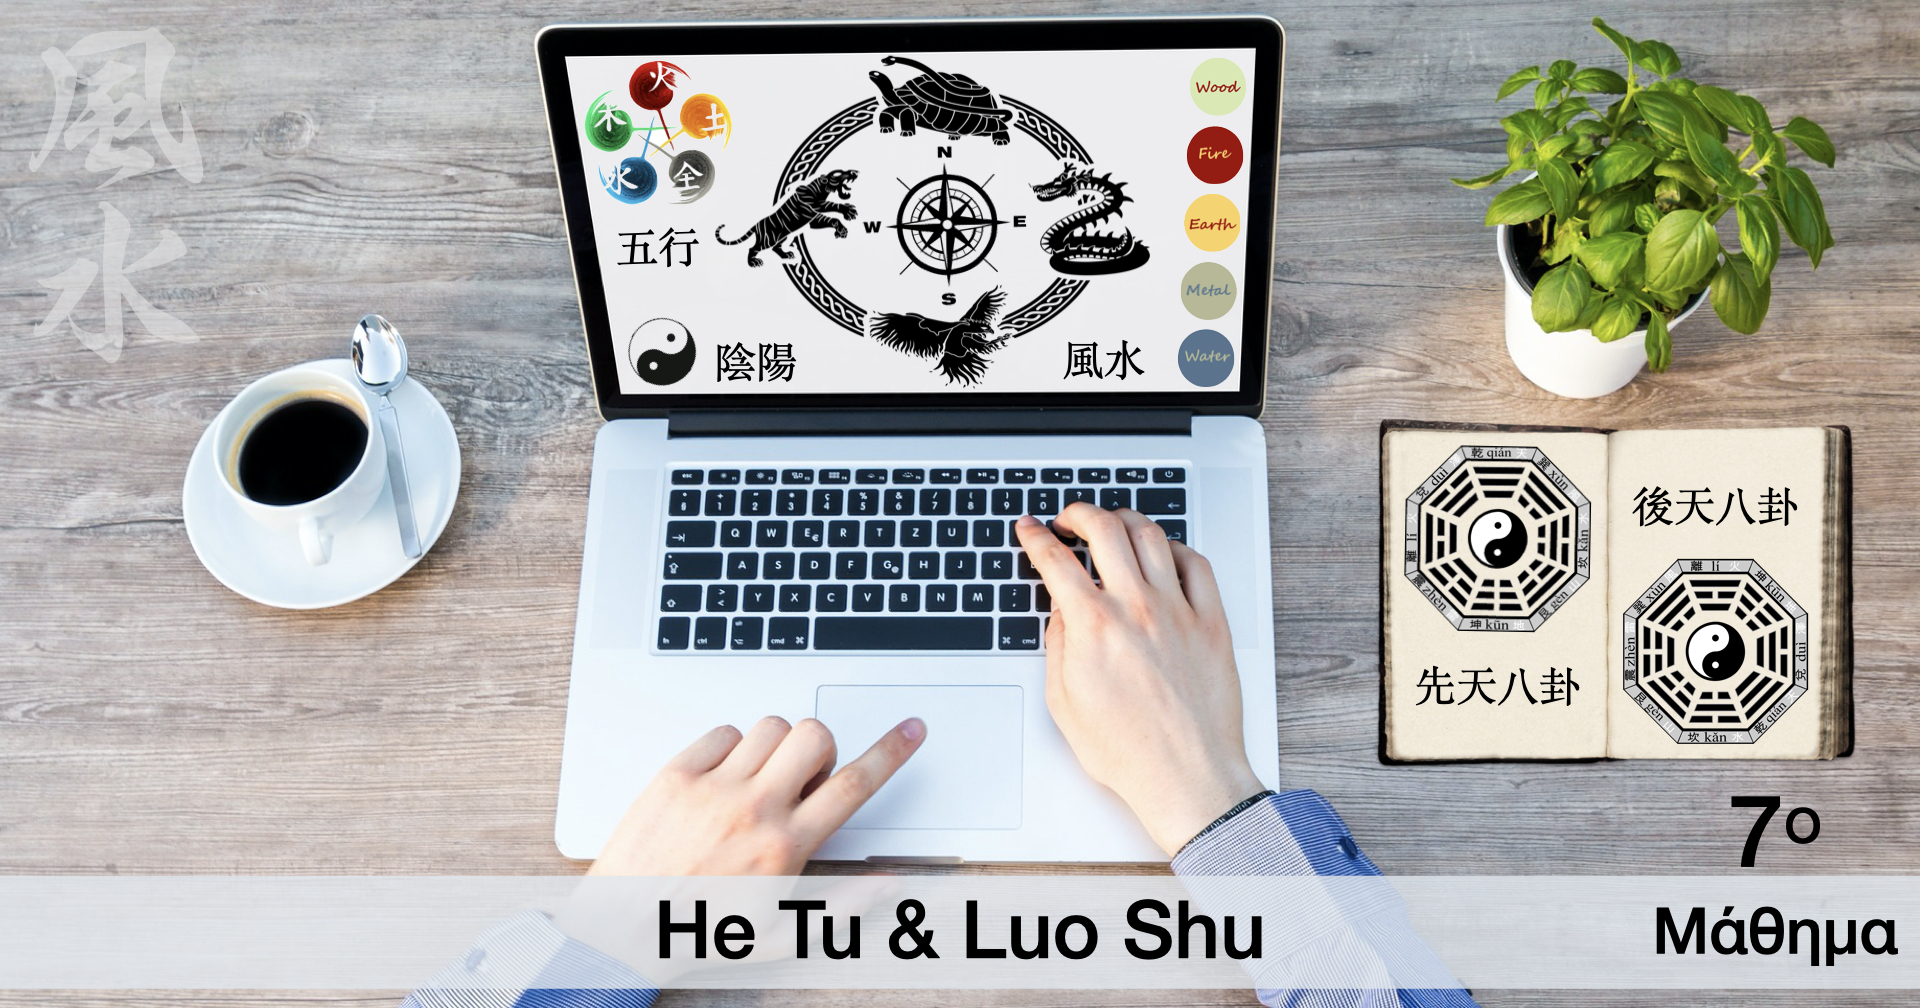 He Tu & Luo Shu